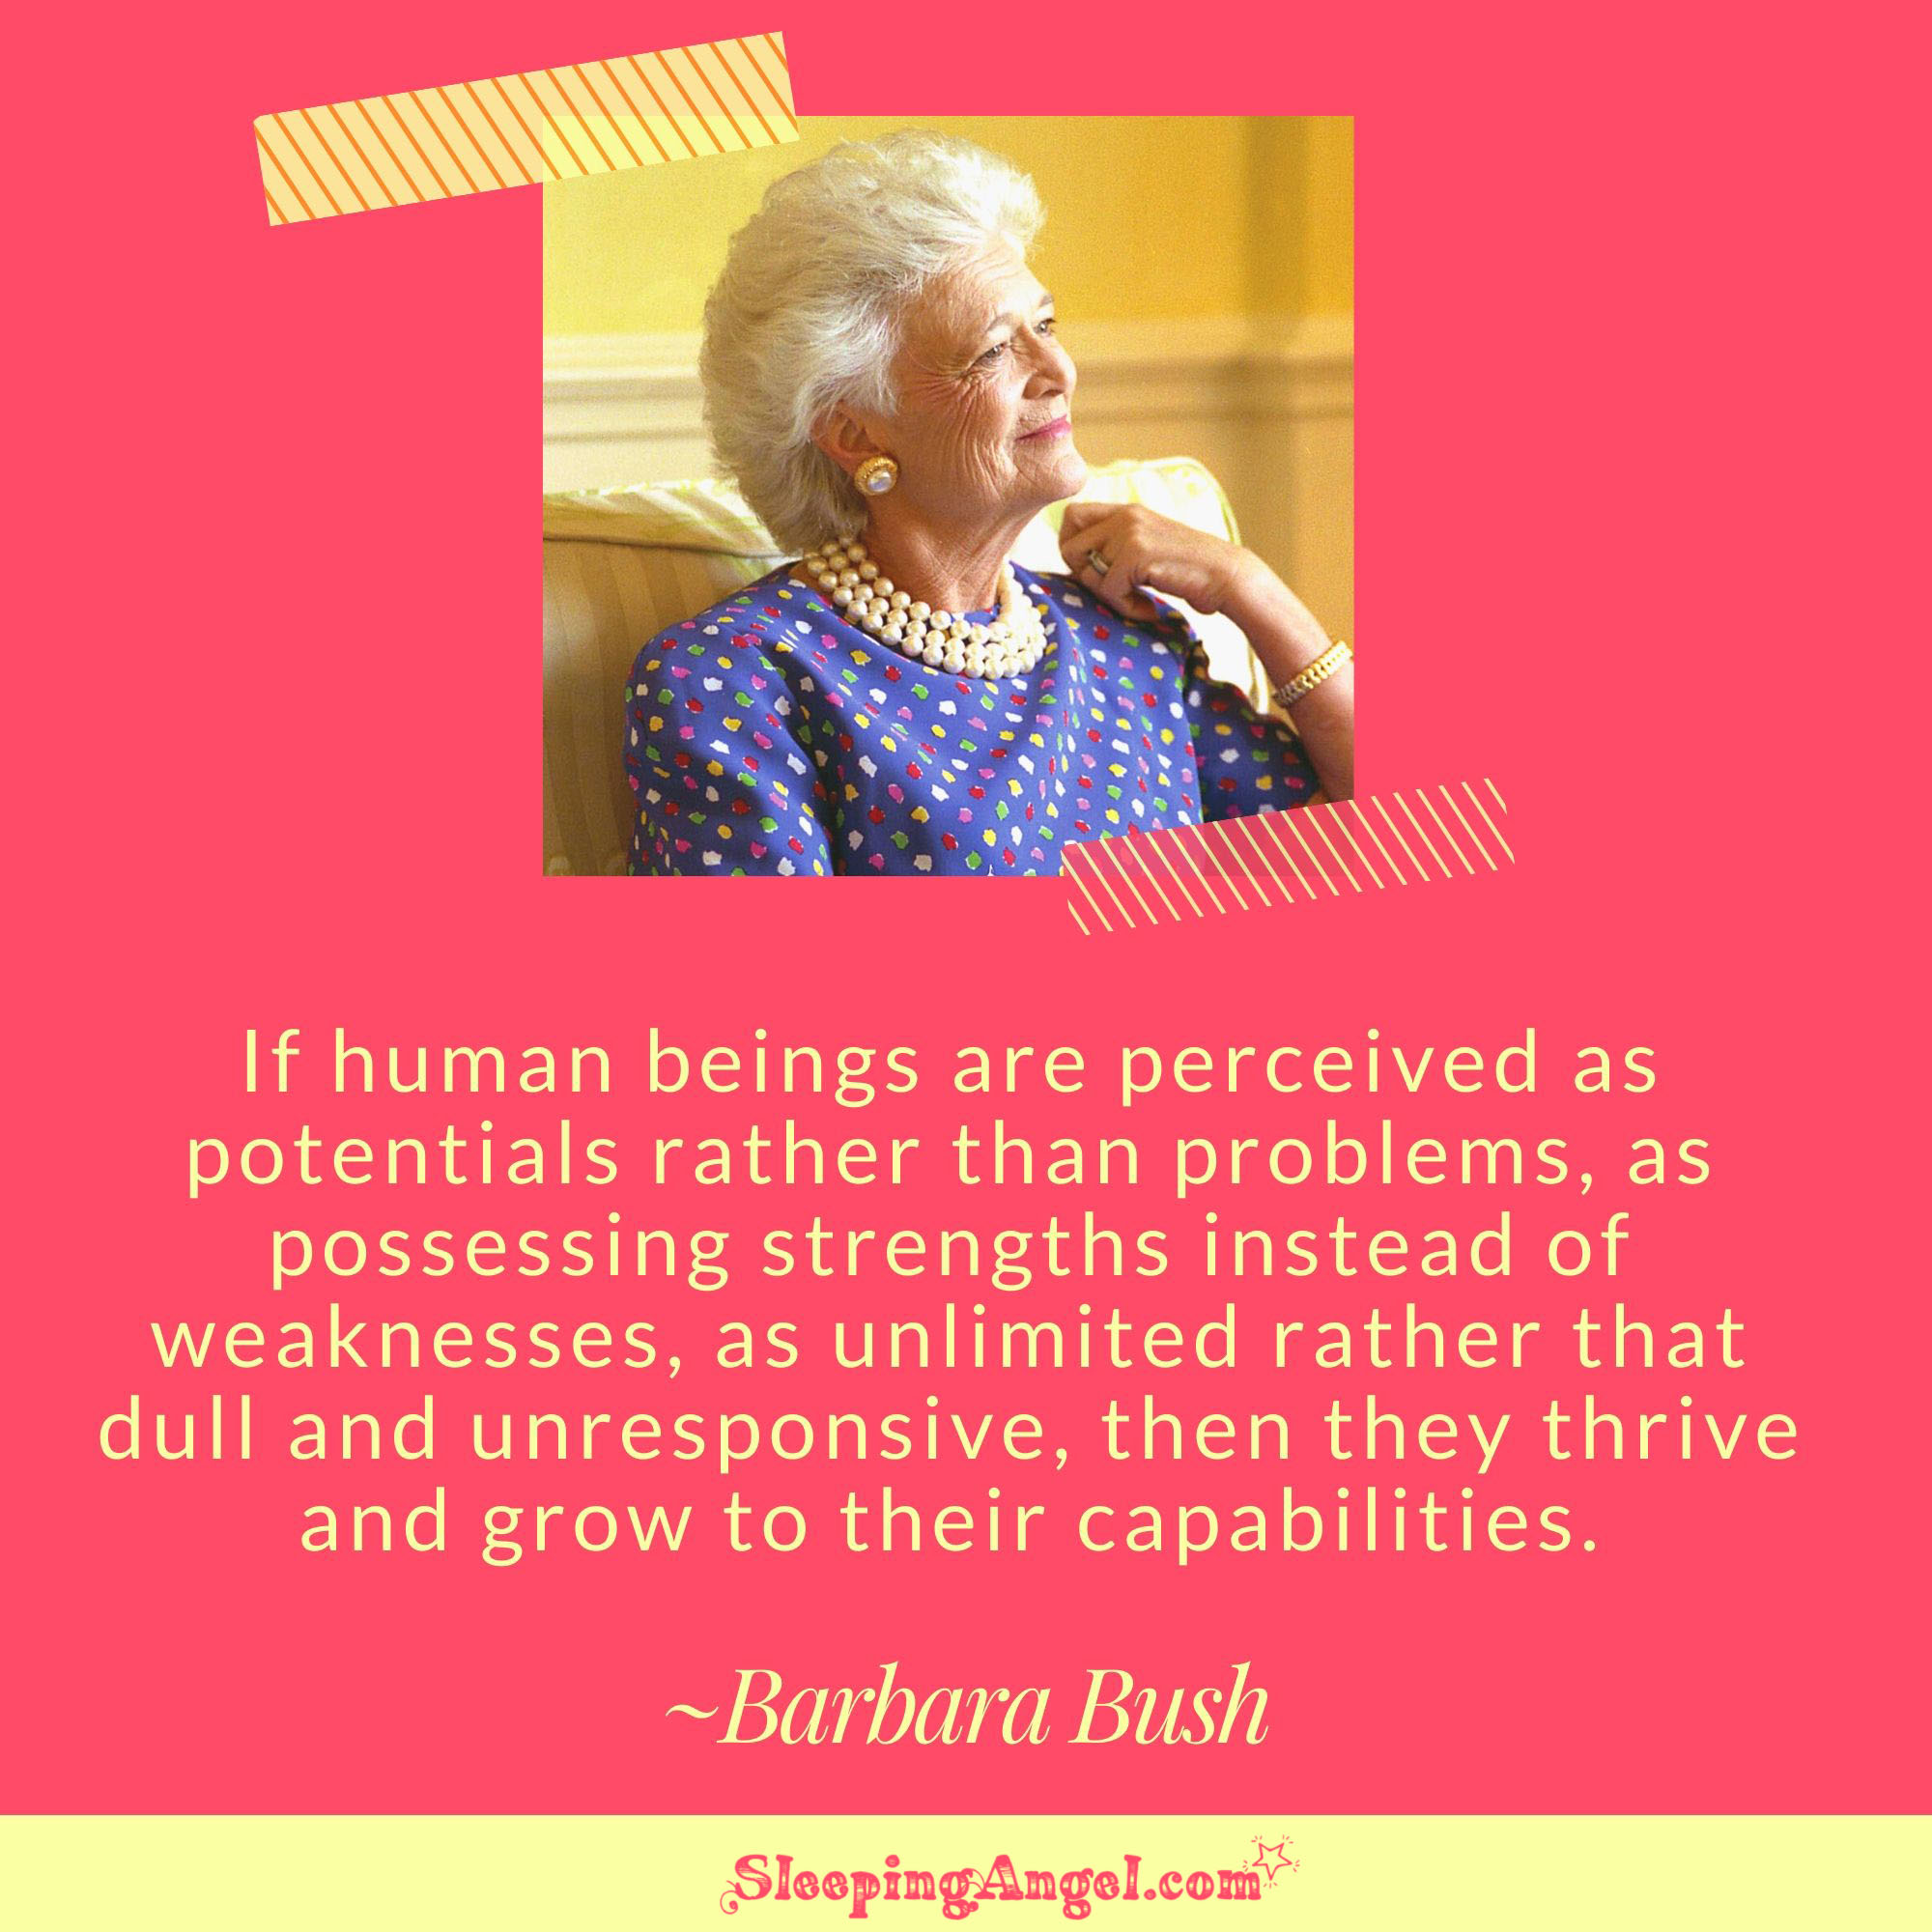 Barbara Bush Quote